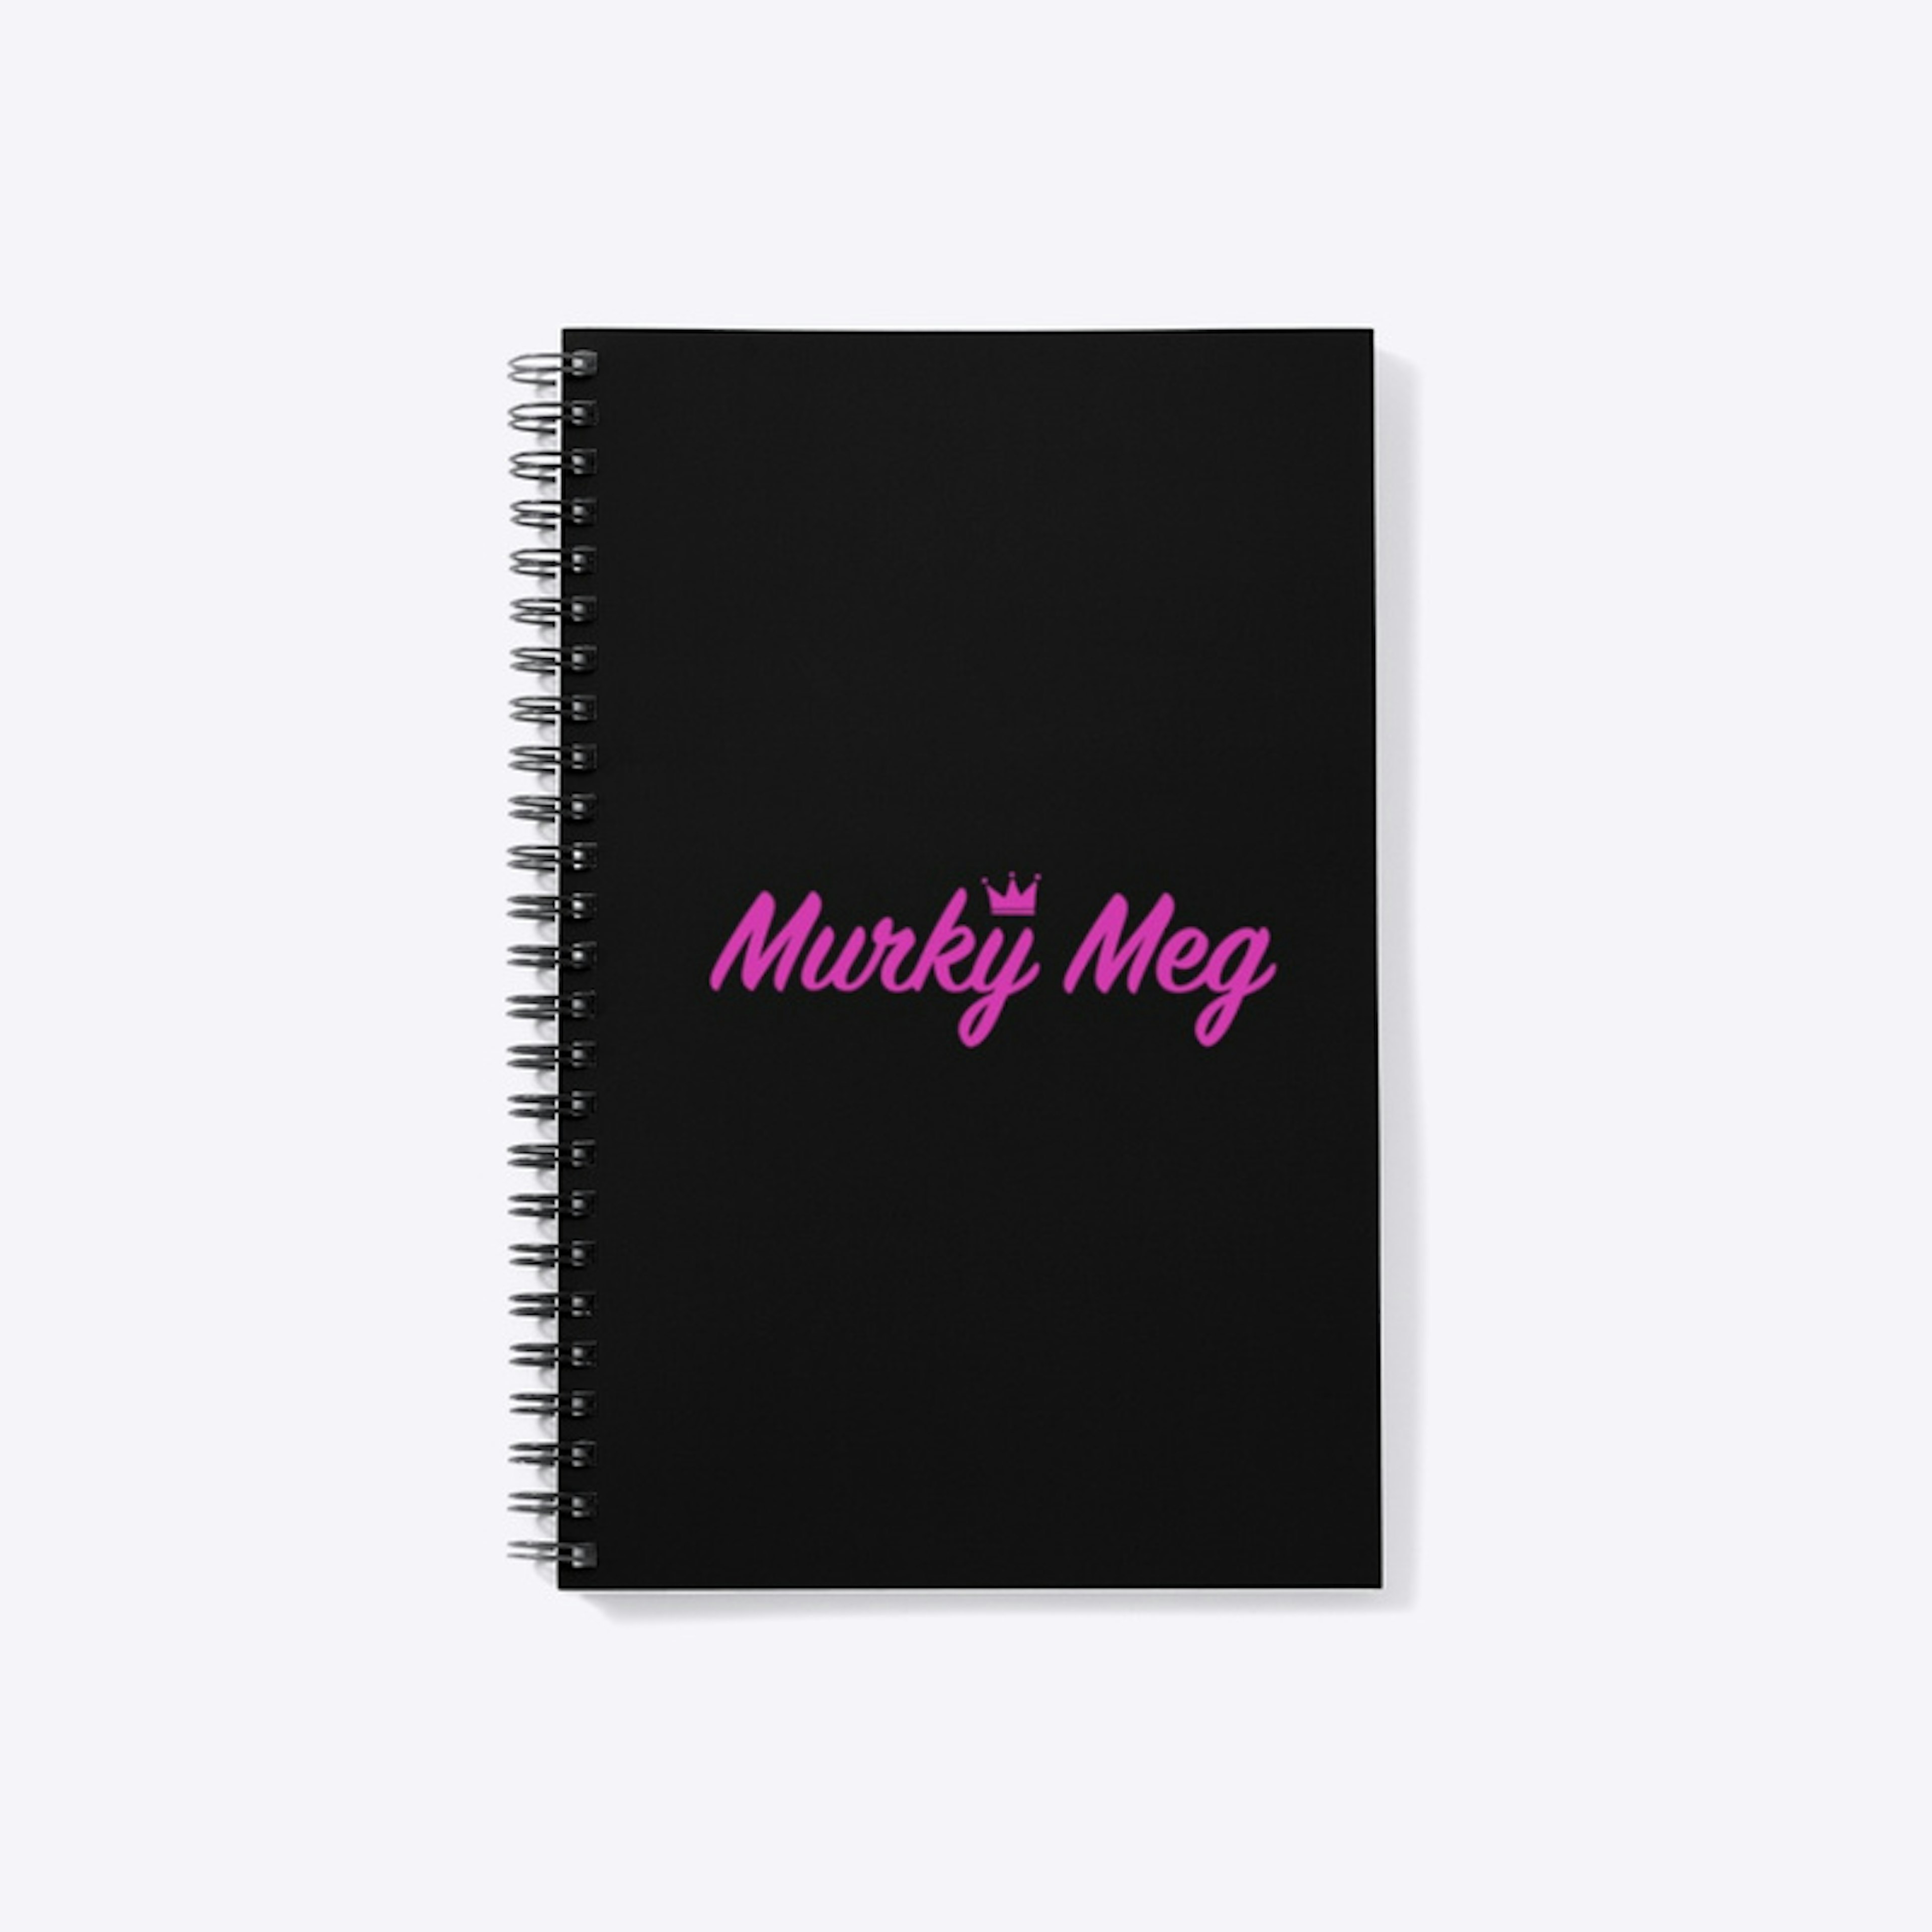 NEW DESIGN - Murky Meg Notebook